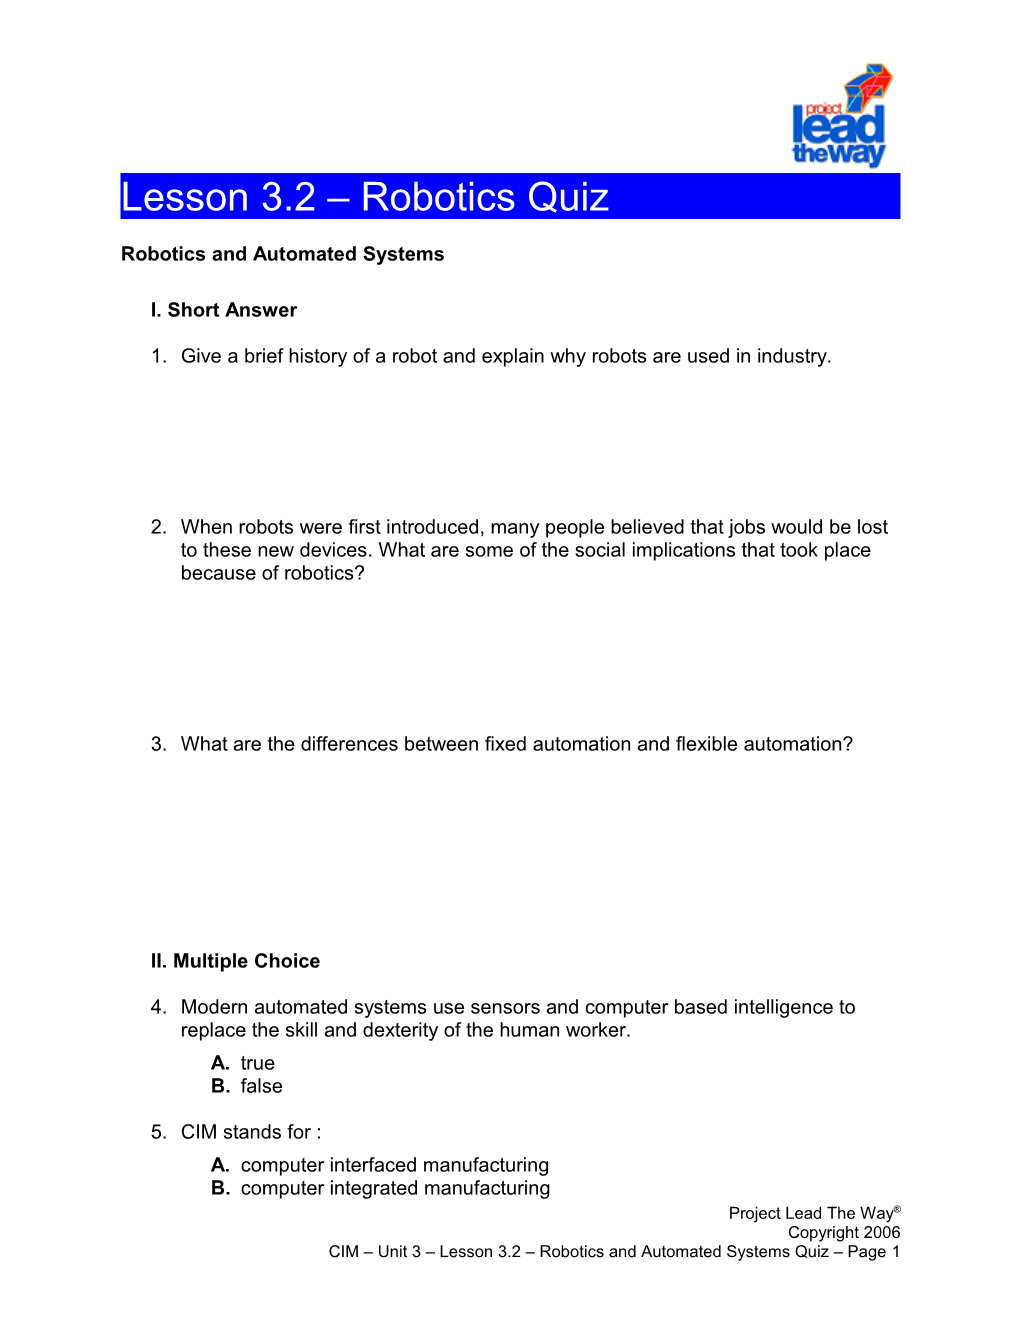 Lesson 3.2 - Robotics Quiz